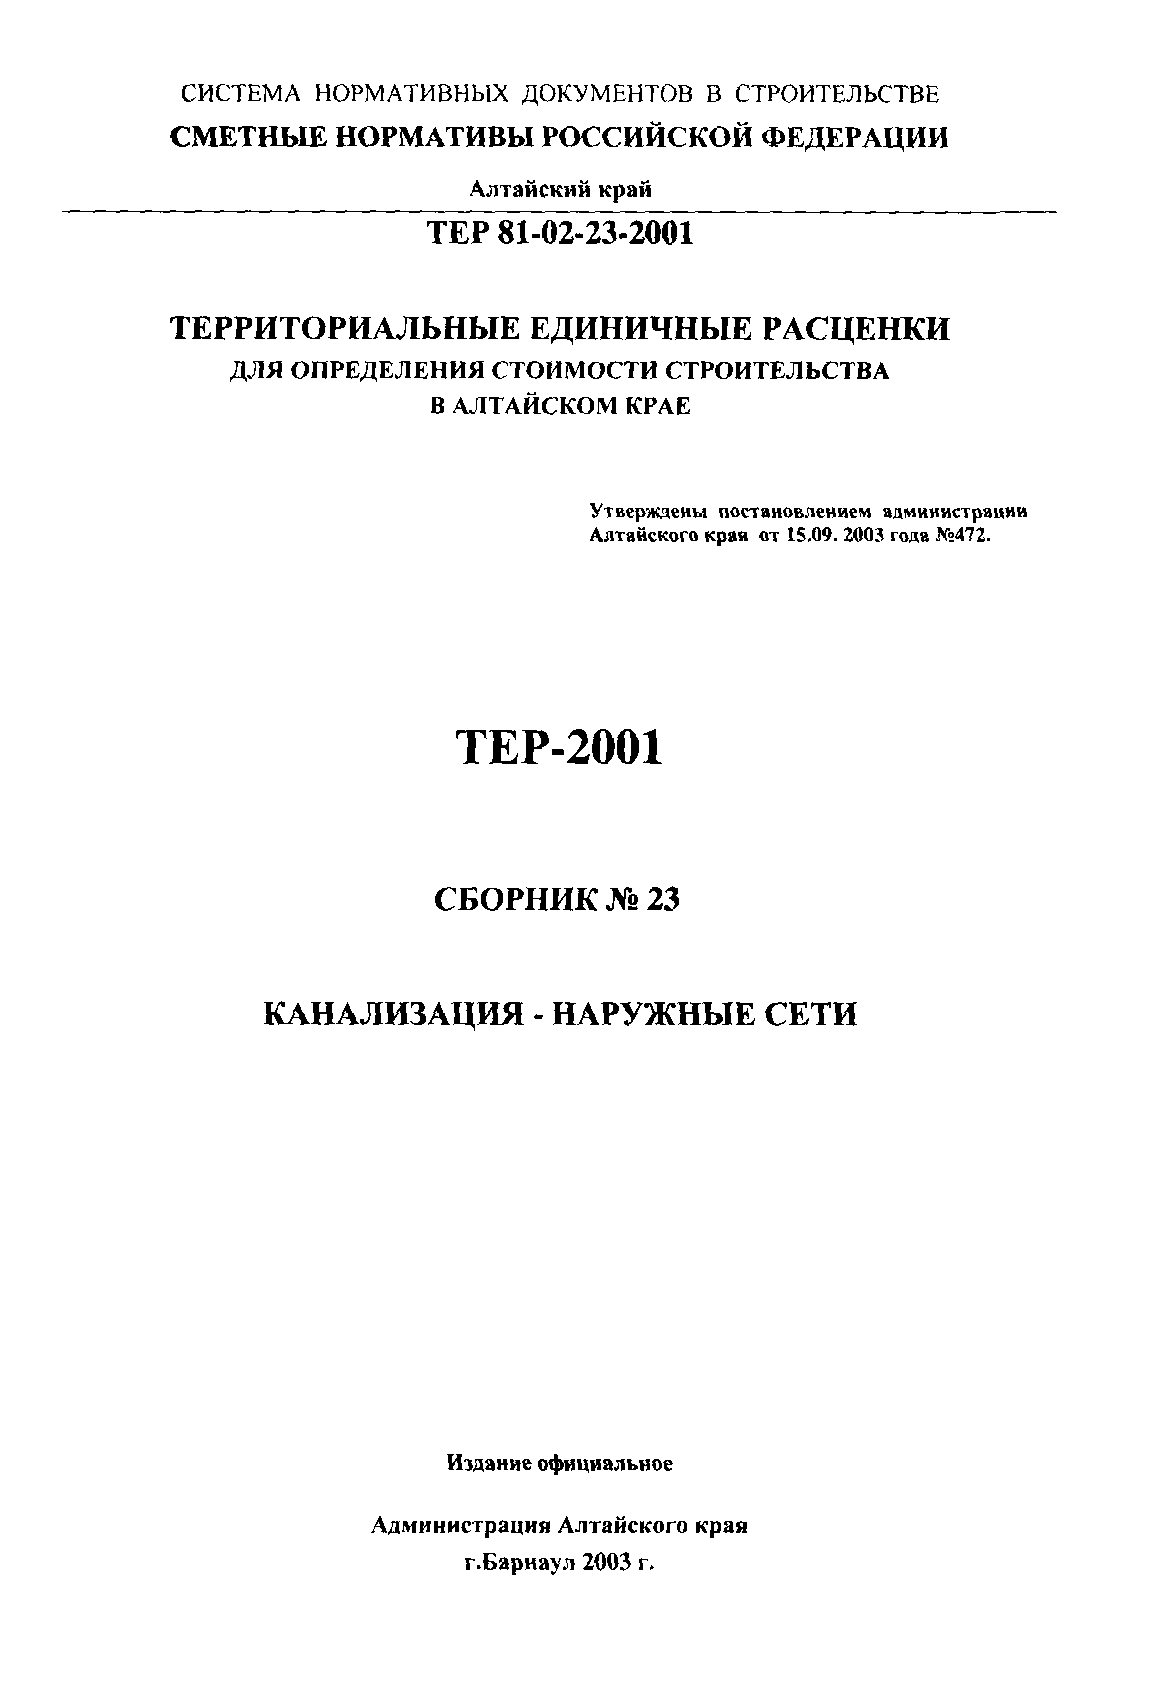 ТЕР Алтайский край 2001-23